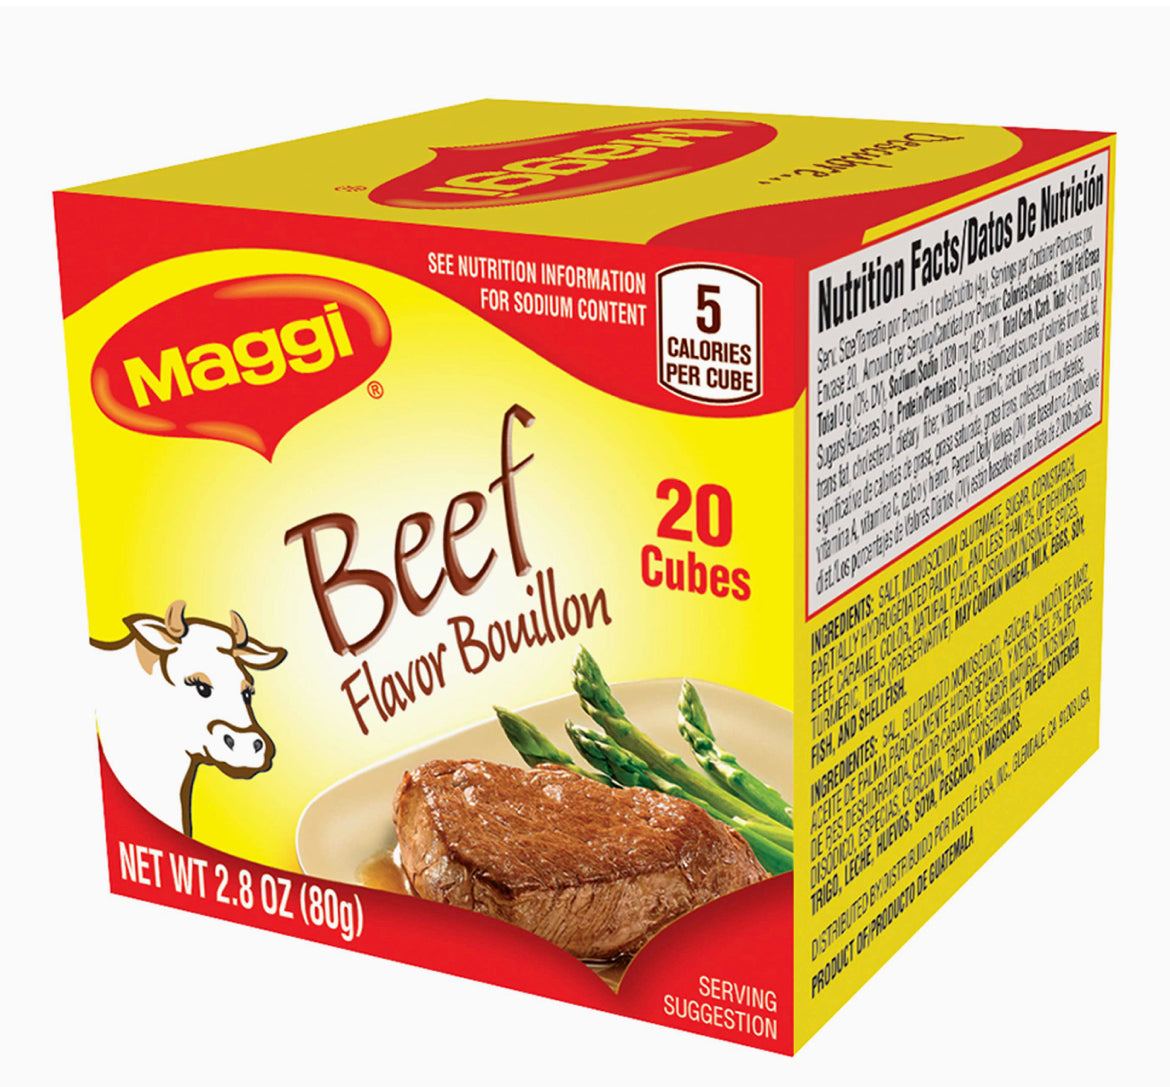 Maggi Beef Flavour Bouillon 20 cubes. 2.82oz(80g)